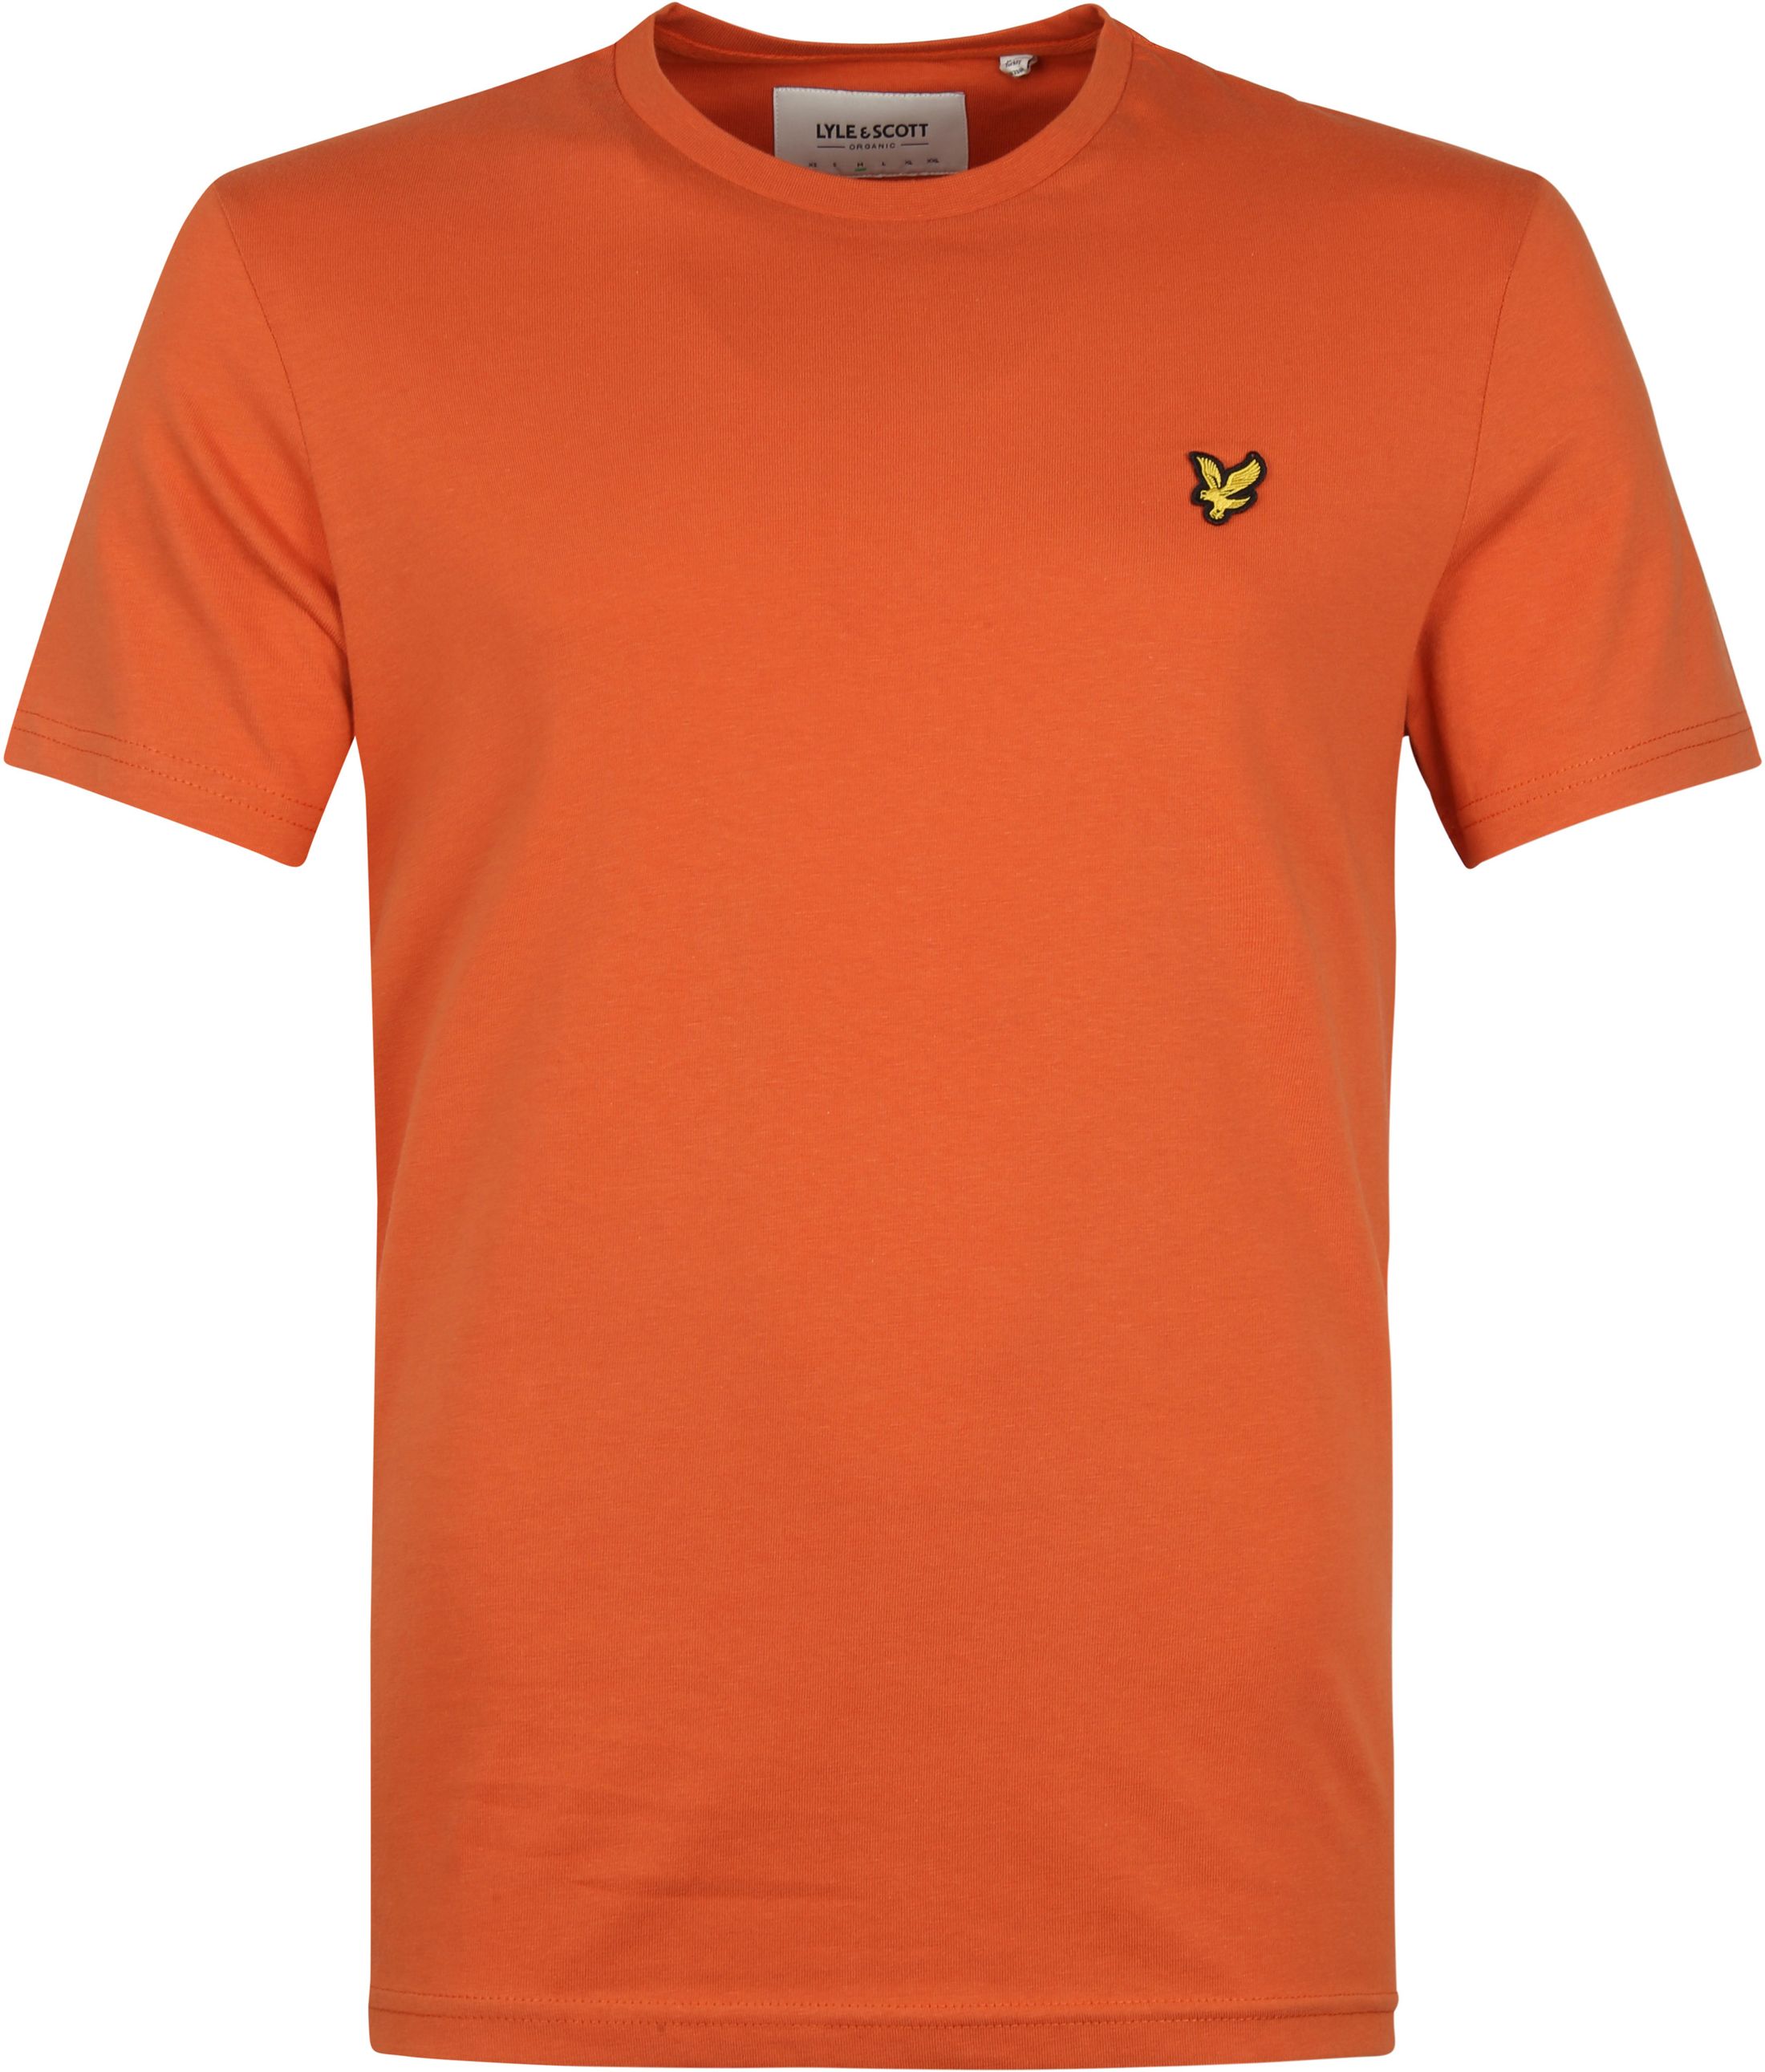 Lyle and Scott T-shirt Plain Orange size L